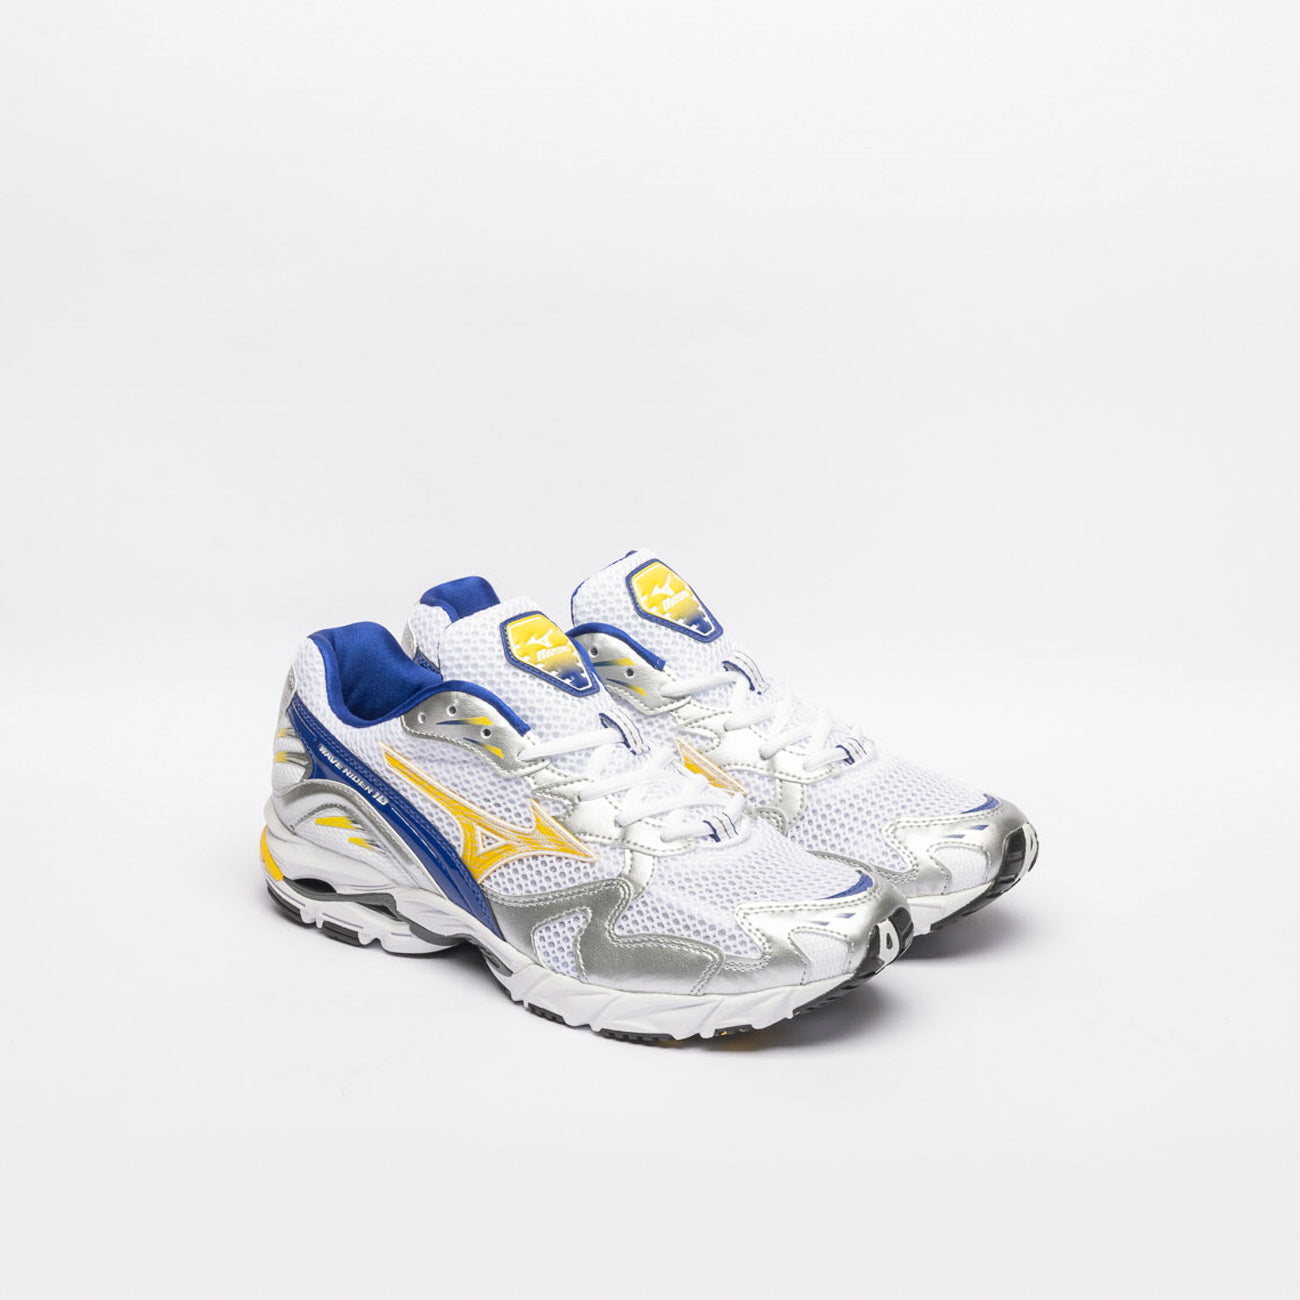 Sneaker running Mizuno Wave Rider 10 in nylon bianco con pelle blu e gialla (Size 11.5)